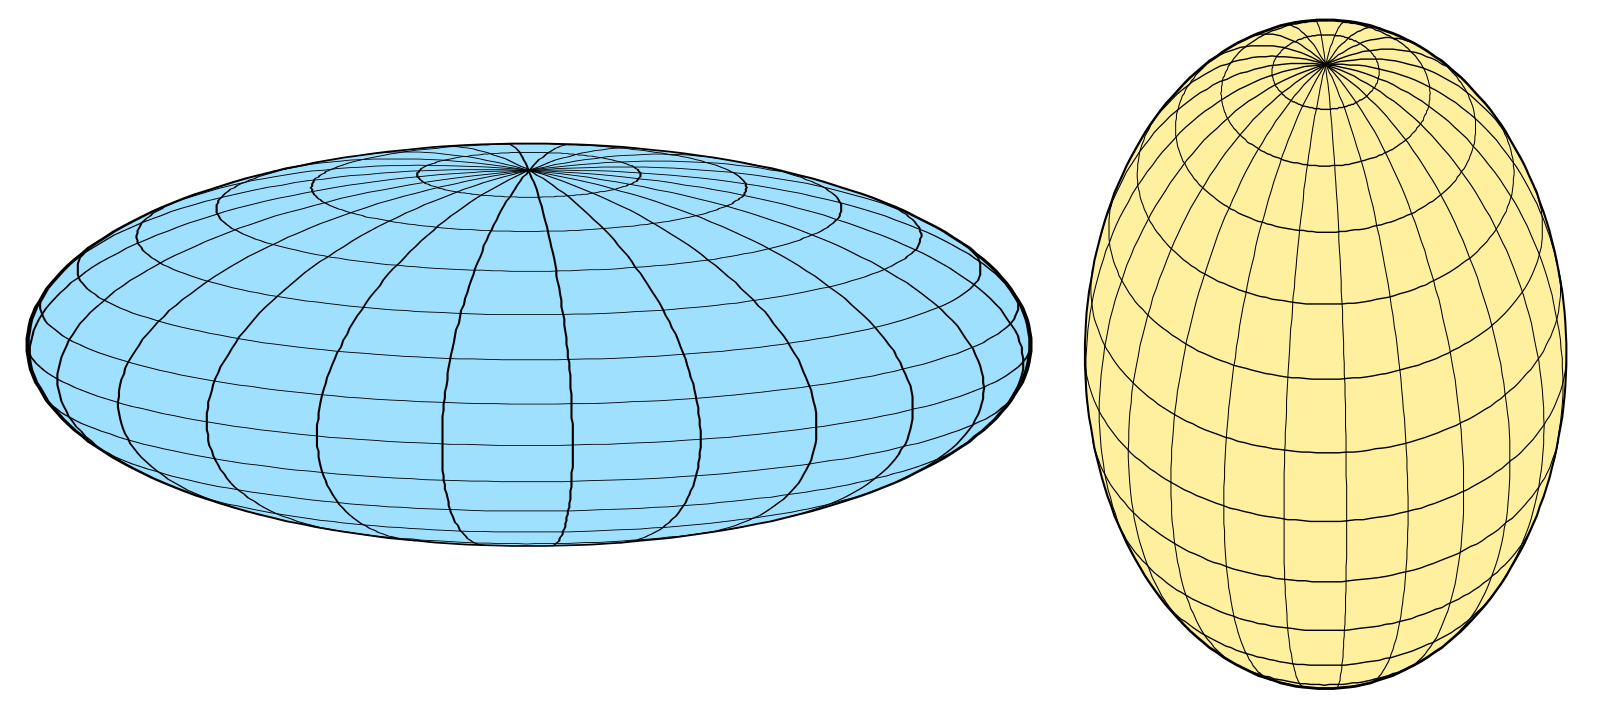 Шар сферической формы. Эллипсоид вращения сфероид. Сплюснутый сфероид. Сплюснутый эллипсоид вращения. Сплюснутый эллипсоид фигура.